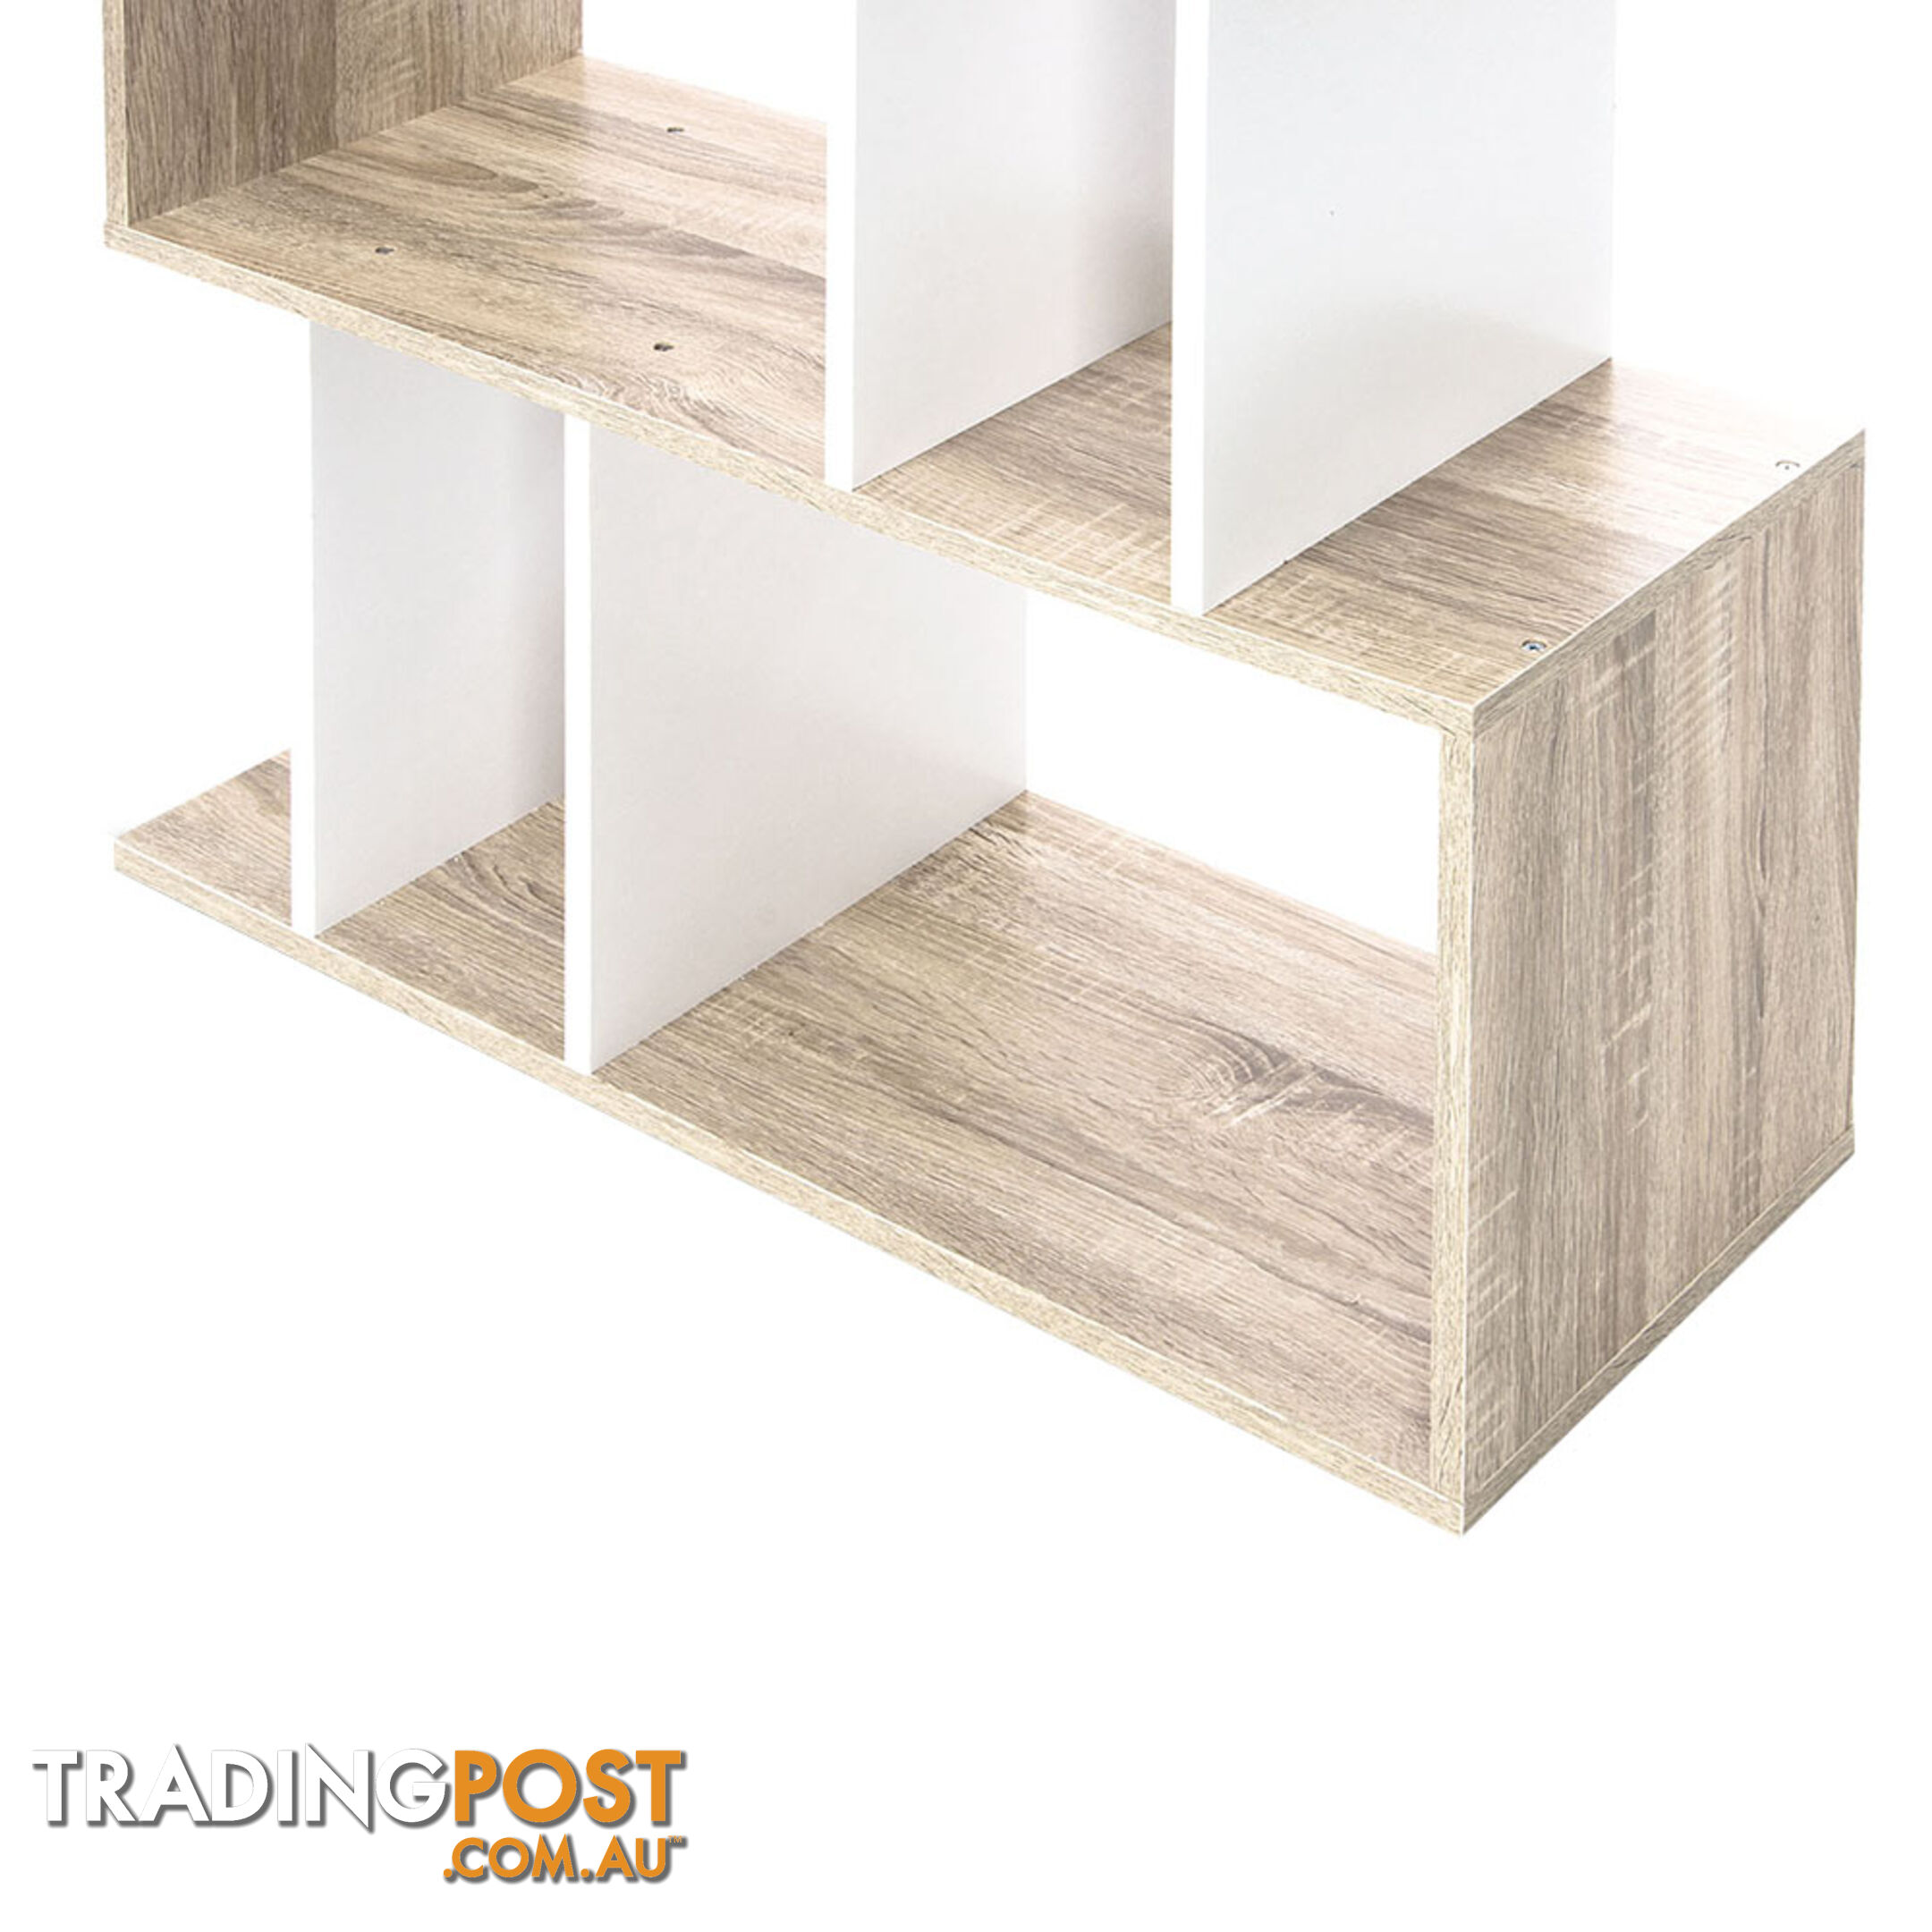 5 Tier Display/Book/Storage Shelf Unit White Brown